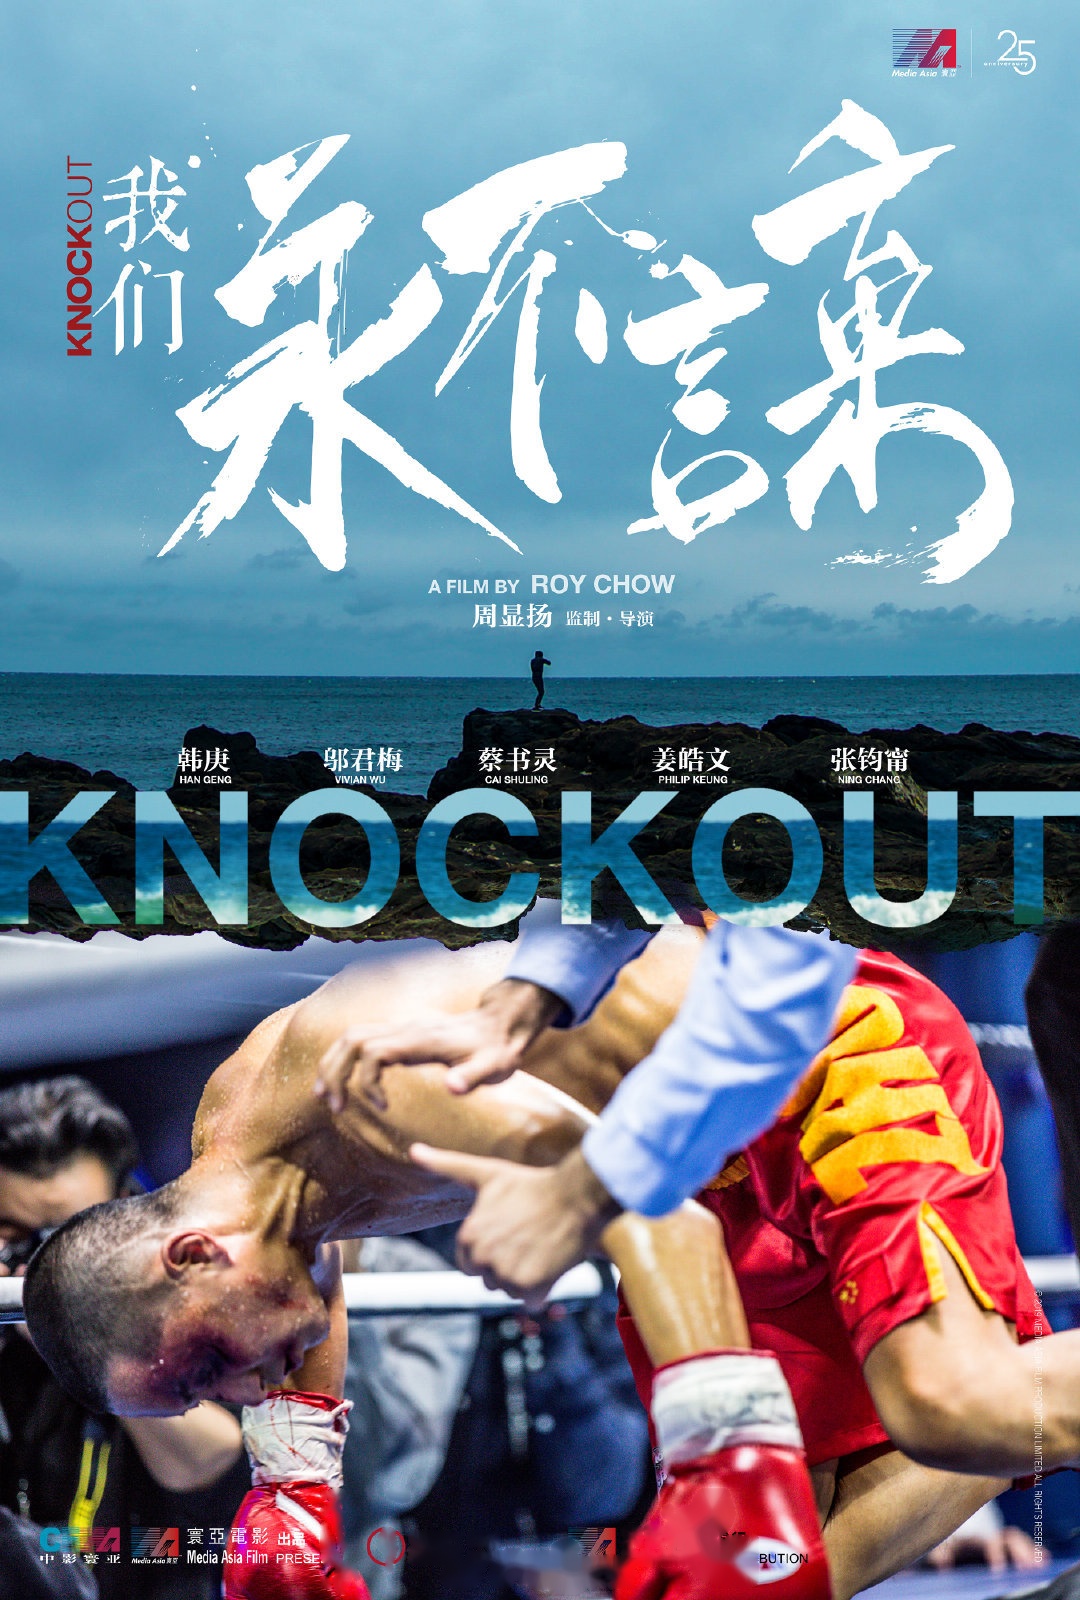 周显扬执导的拳击题材电影《我们永不言弃》,韩庚在片中饰演一位拳击